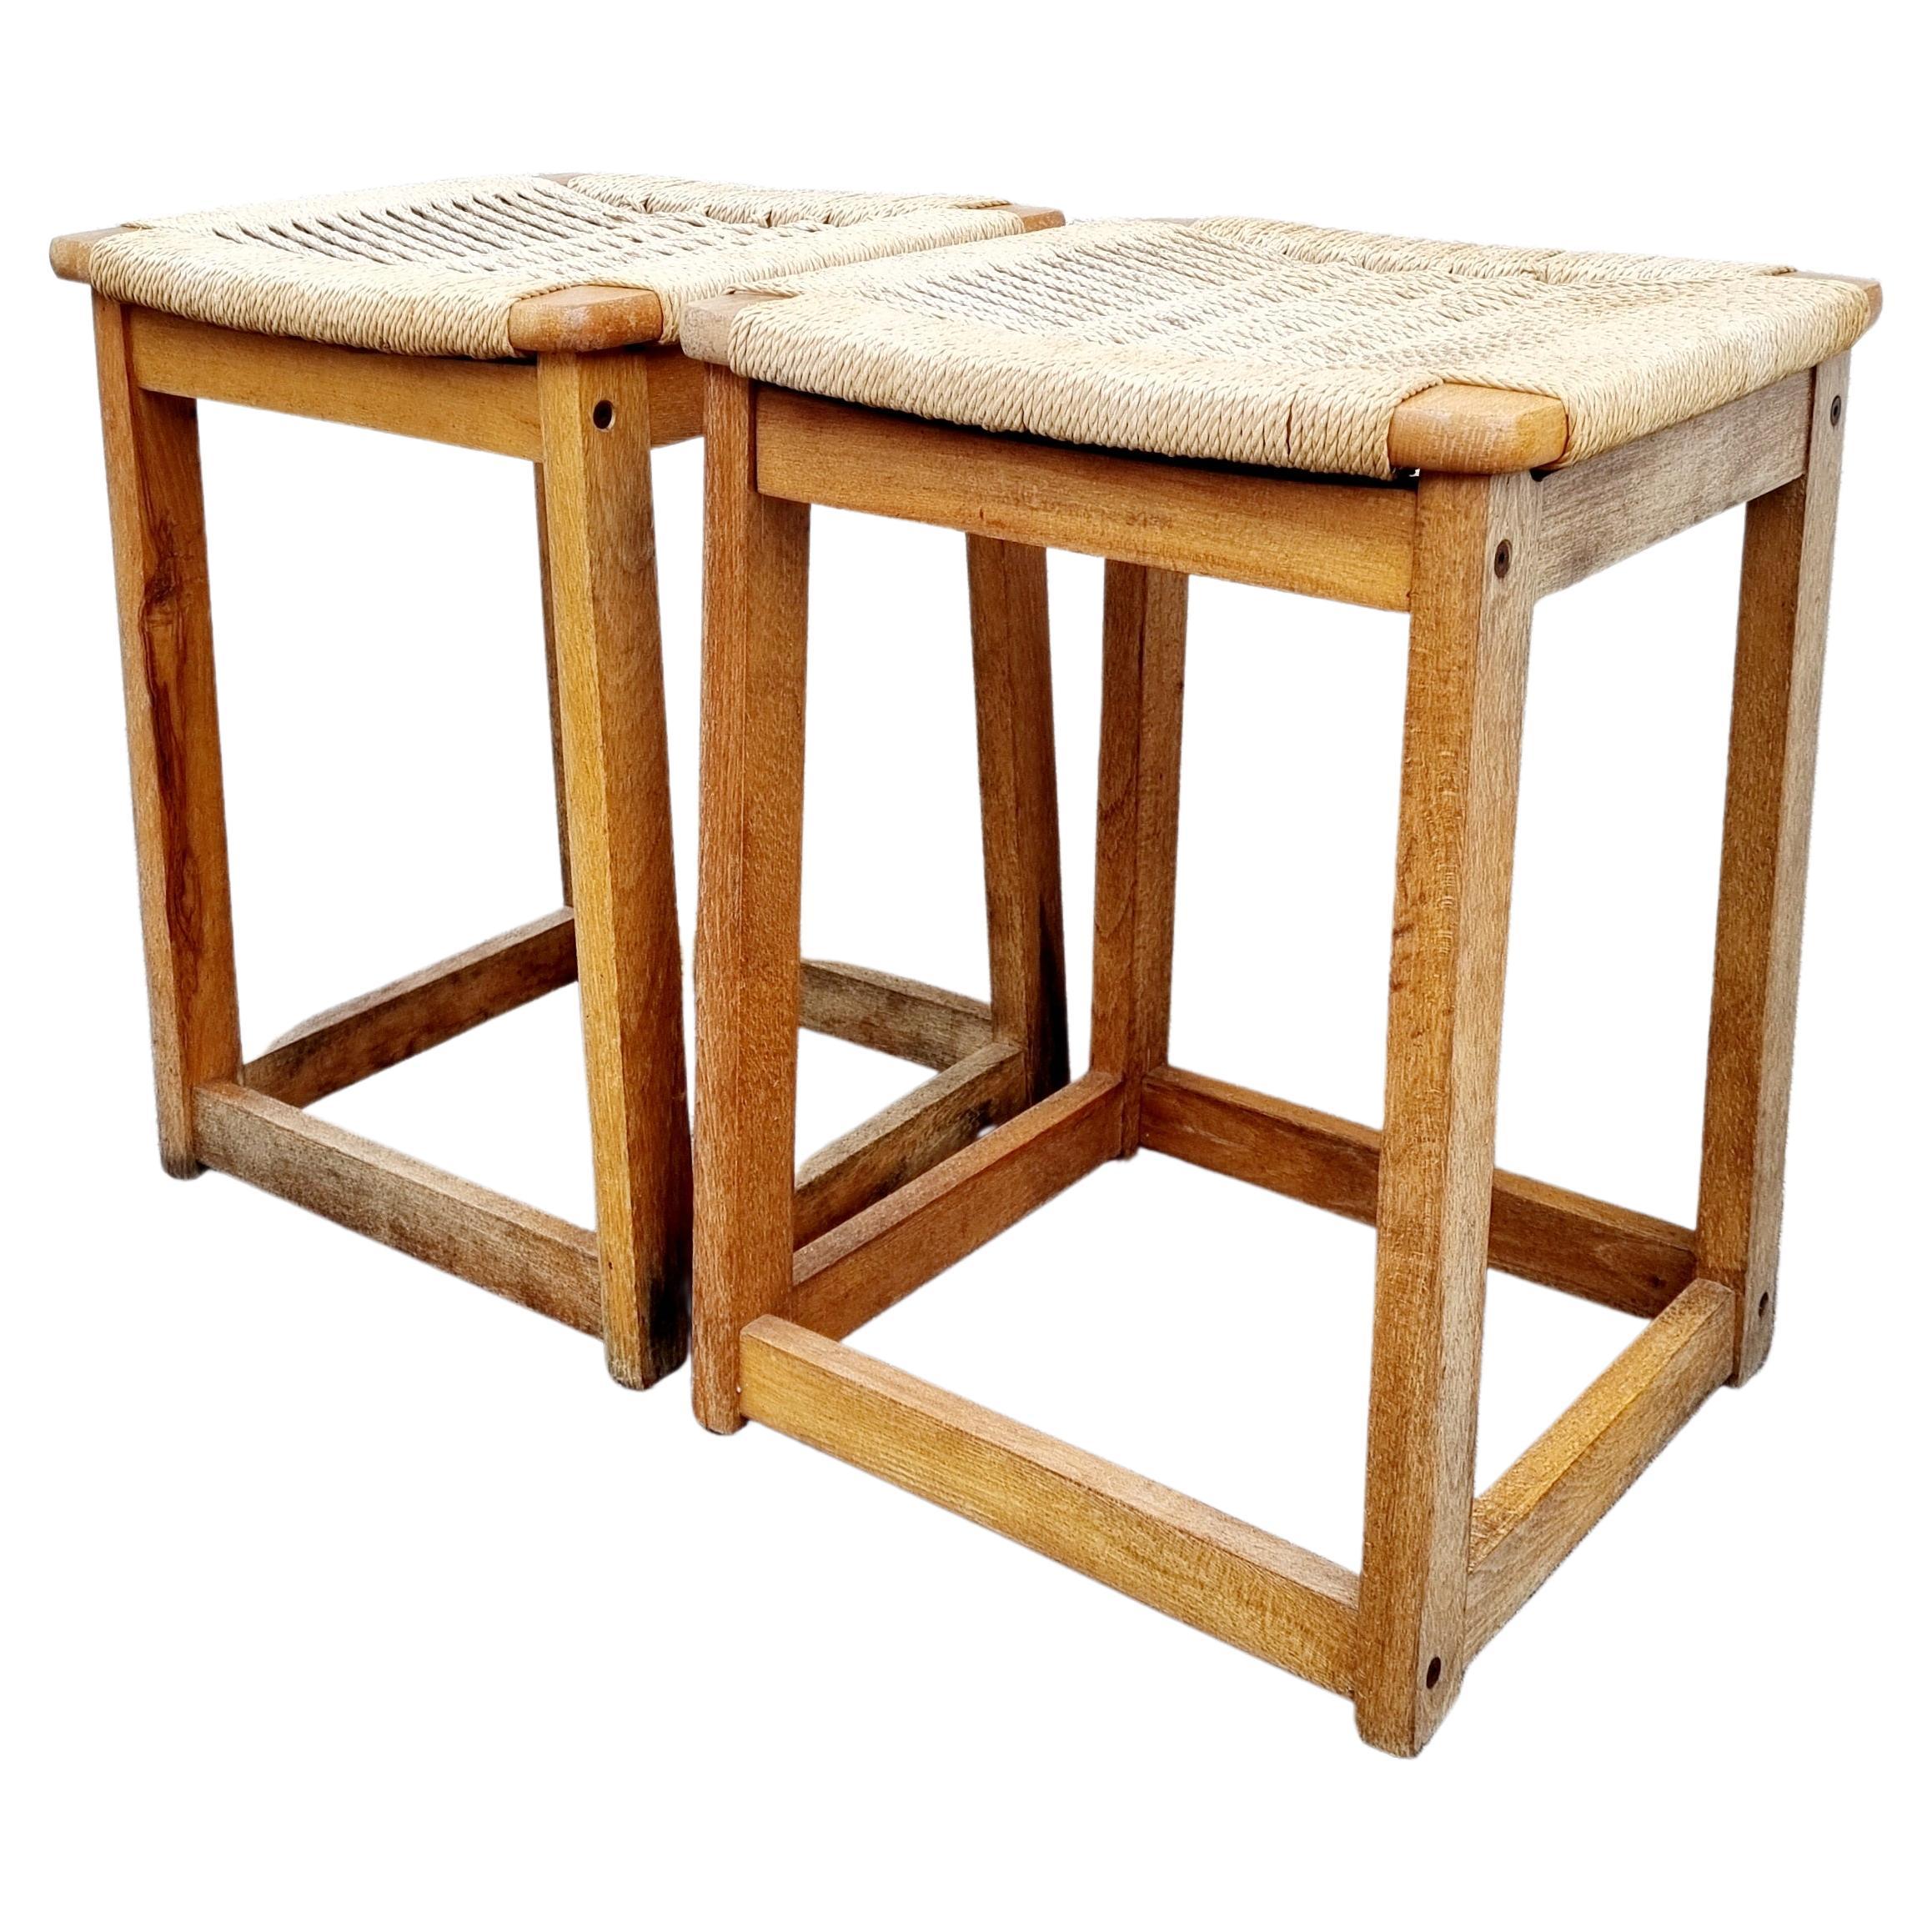 Ces magnifiques tabourets en bois vintage ont été conçus par Ebert Wels dans les années 60. Design/One.

Ces tabourets rétro ont une structure en bois et des sièges en corde beige.
Les tabourets sont très confortables et constituent une décoration